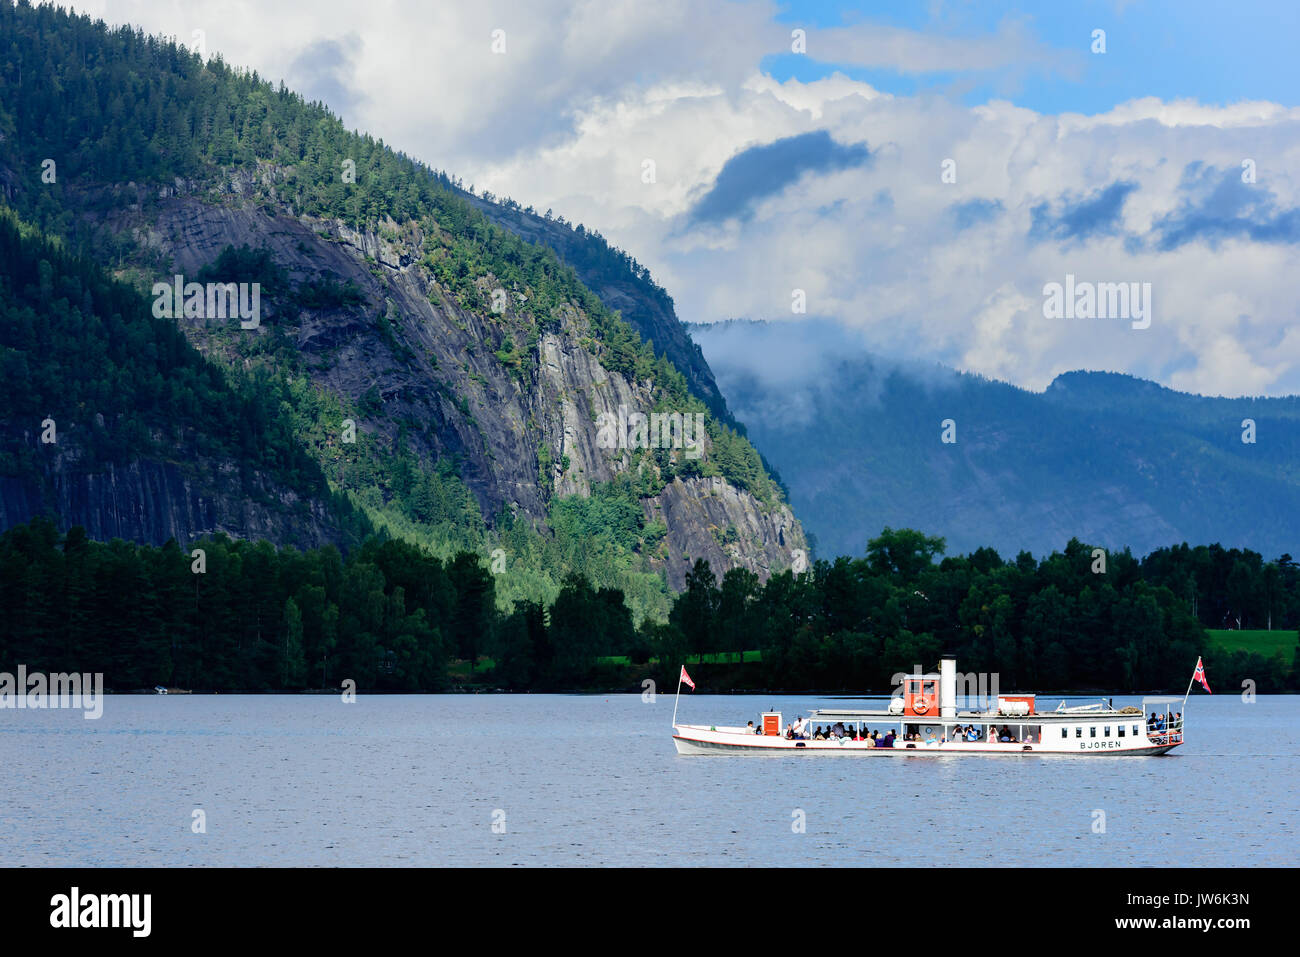 Kvinesdal, Norwegen - 1 August 2017: Reisedokumentation der Touristen, das Museum Dampfschiff Bjoren am Bergsee. Dunkle Landschaft mit Berg La Stockfoto